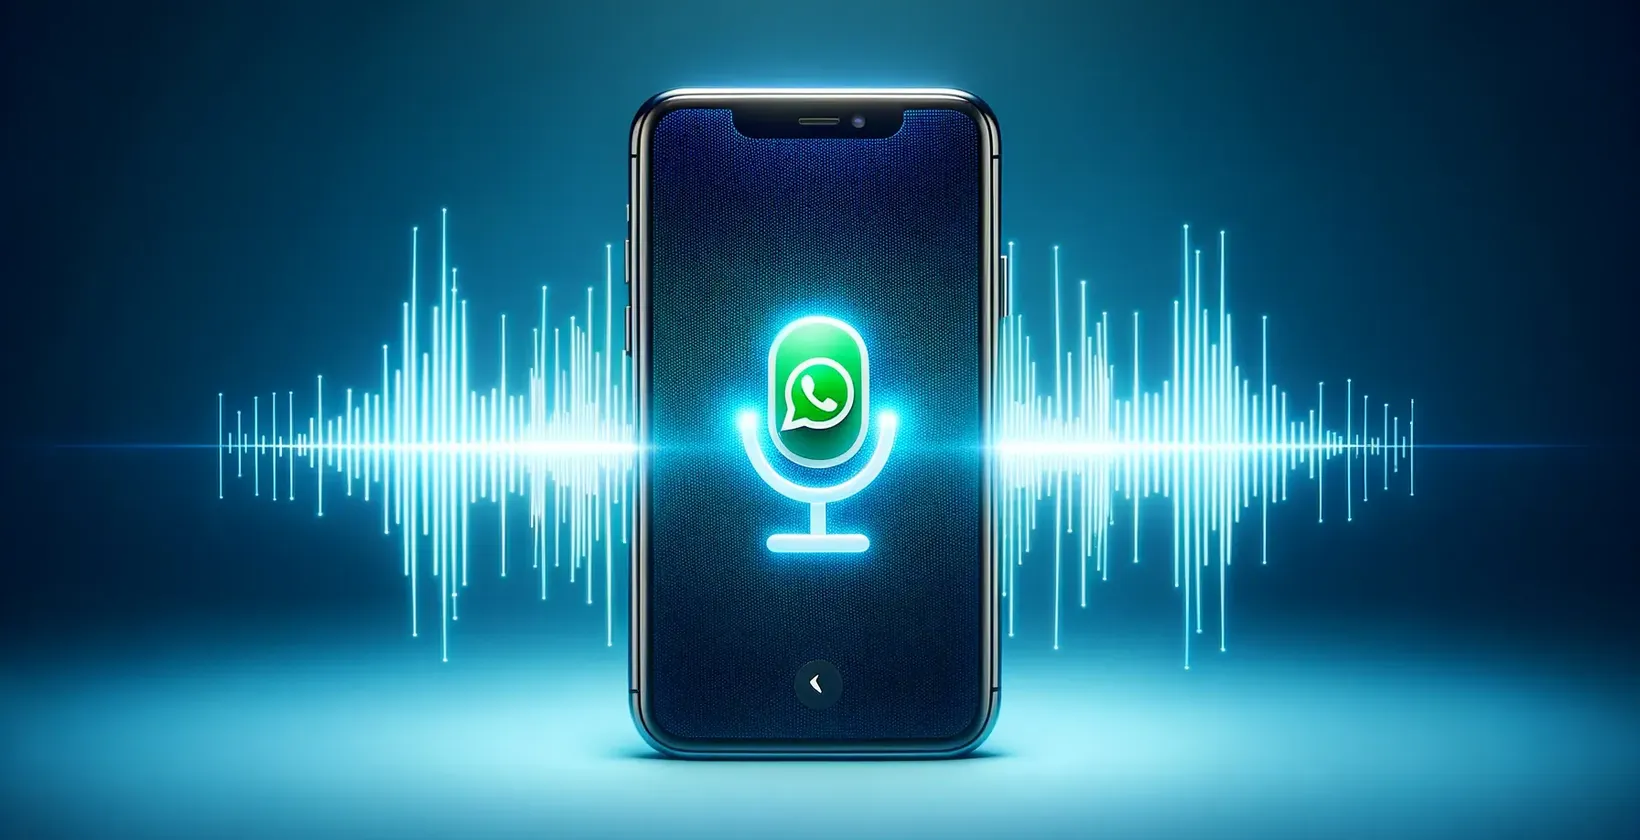 Imej mewakili konsep panggilan suara WhatsApp dengan fungsi imlak